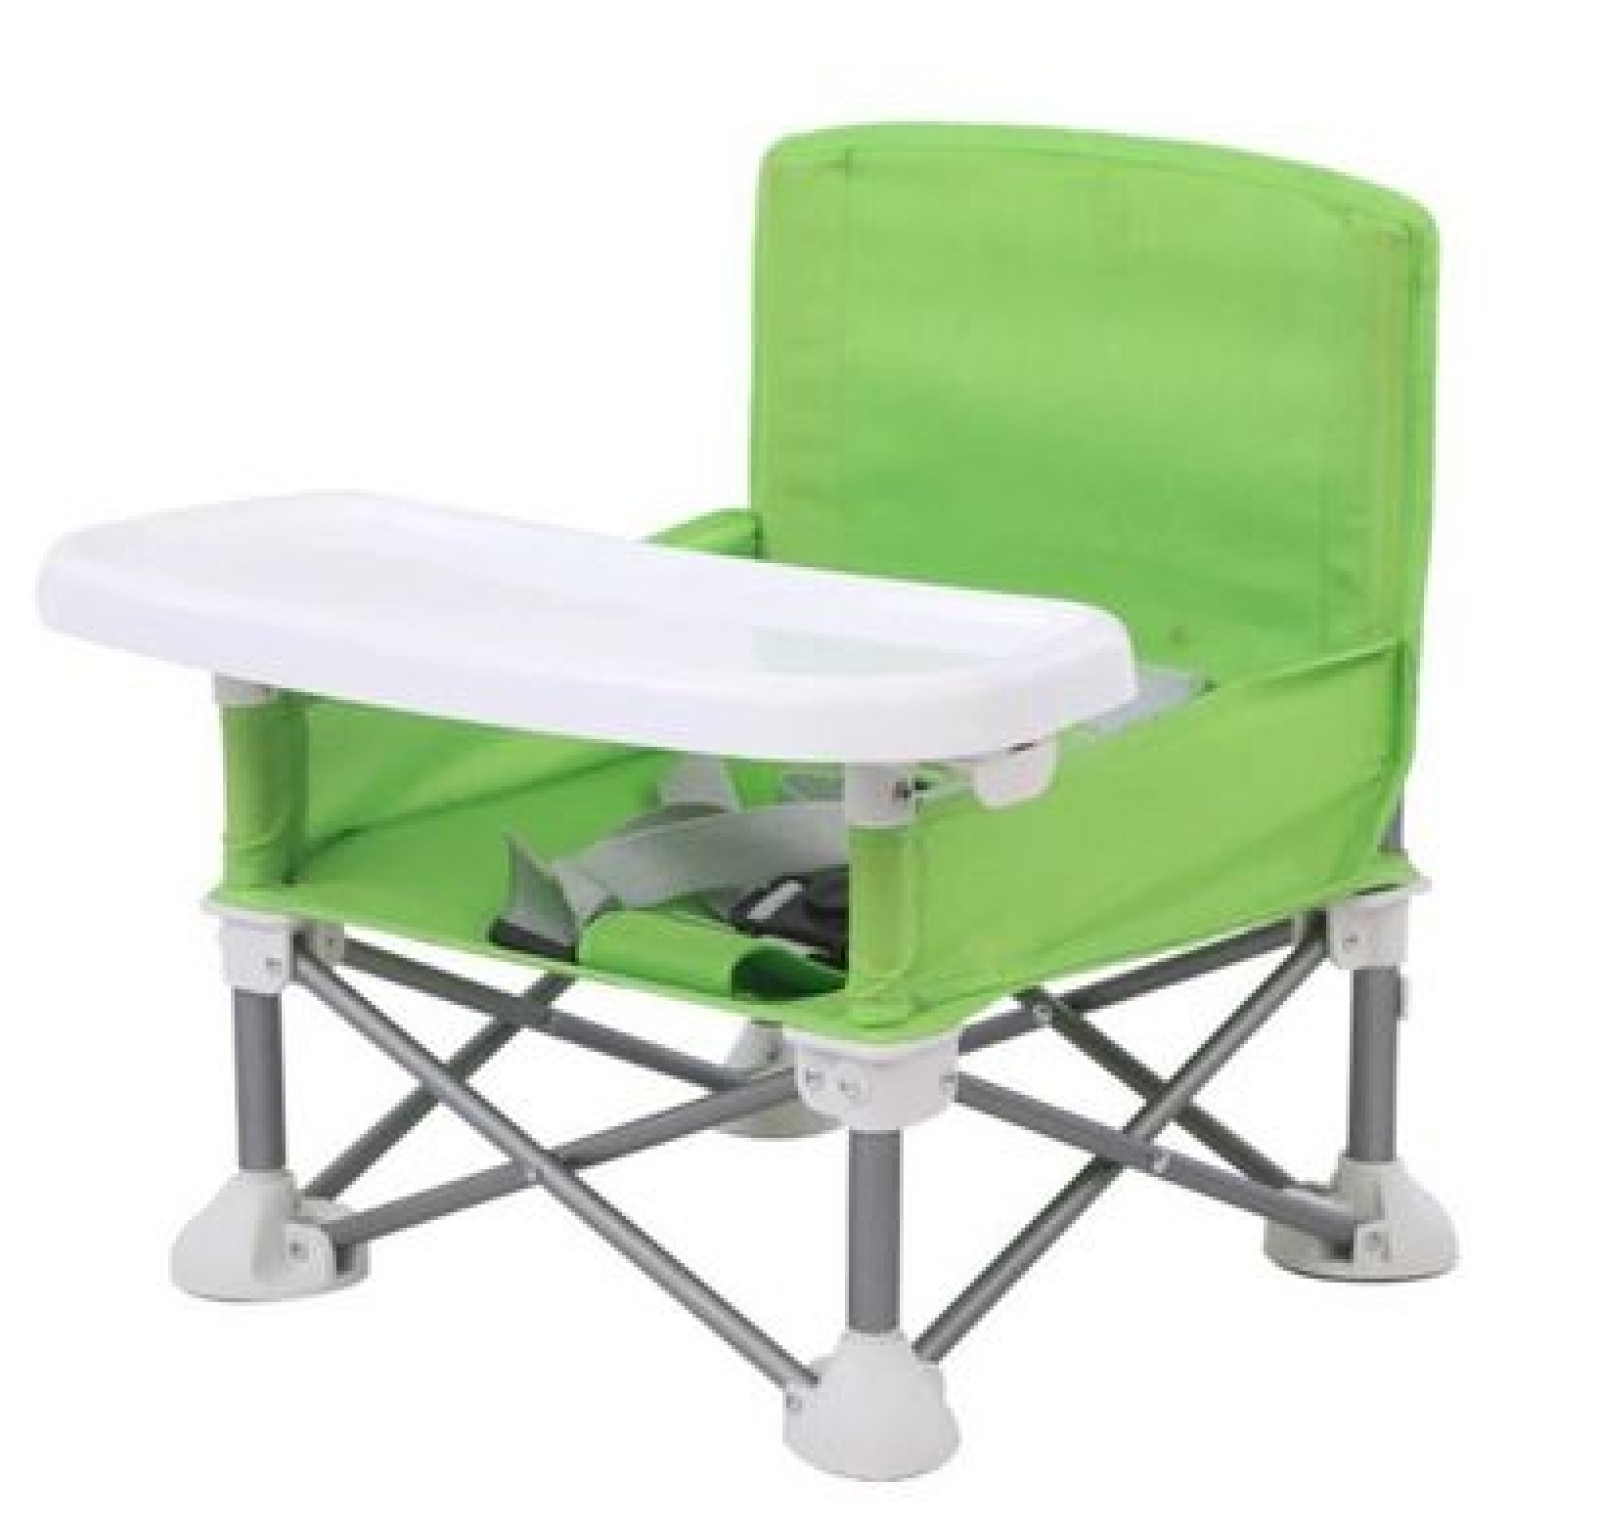 Складной детский стульчик-столик для кормления Baby seat Зеленый 184646